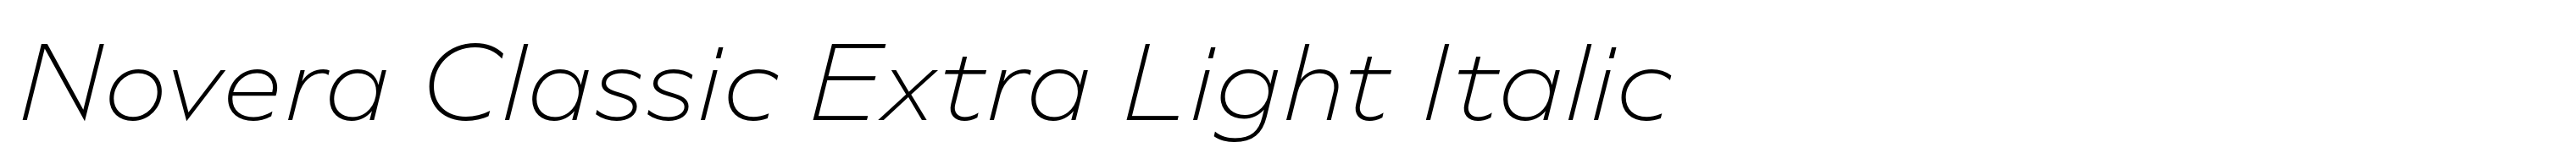 Novera Classic Extra Light Italic